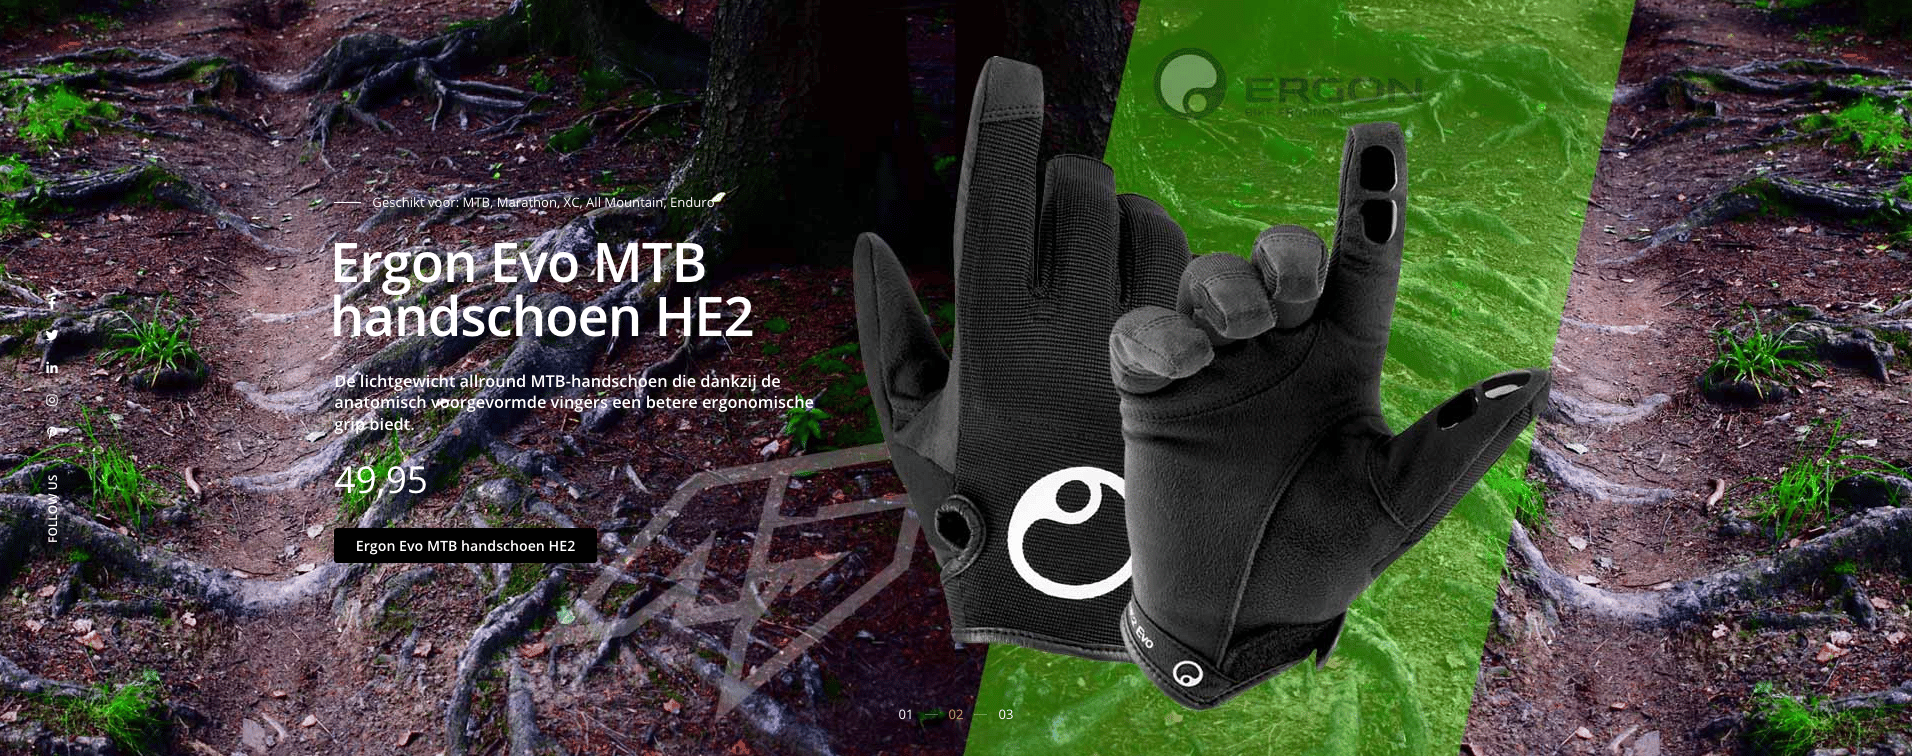 TVH Design promotionele webbanner ontwerp Ergon mtb handschoenen voor A5Sport